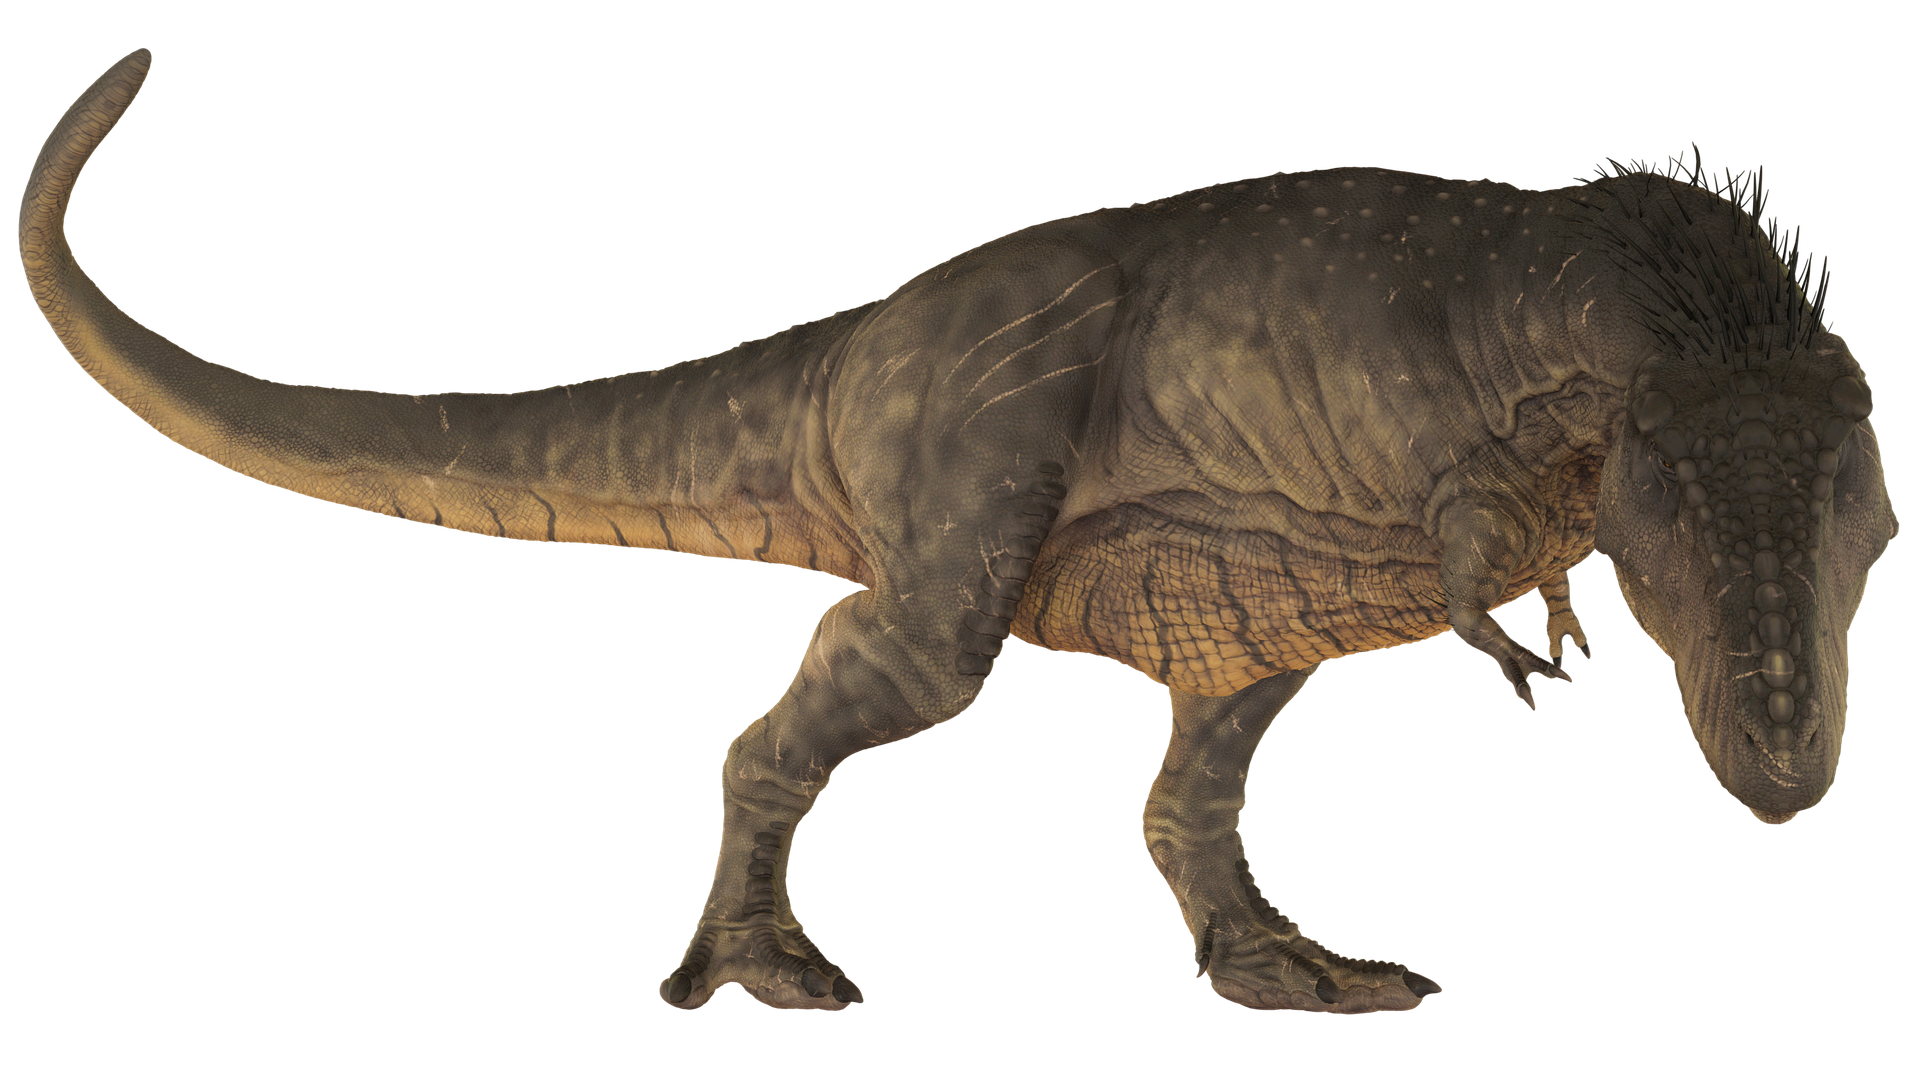 ティラノサウルスに羽毛はあった 羽毛説の真実を徹底解説 恐竜博士と赤ちゃん恐竜と一緒に恐竜を知ろう